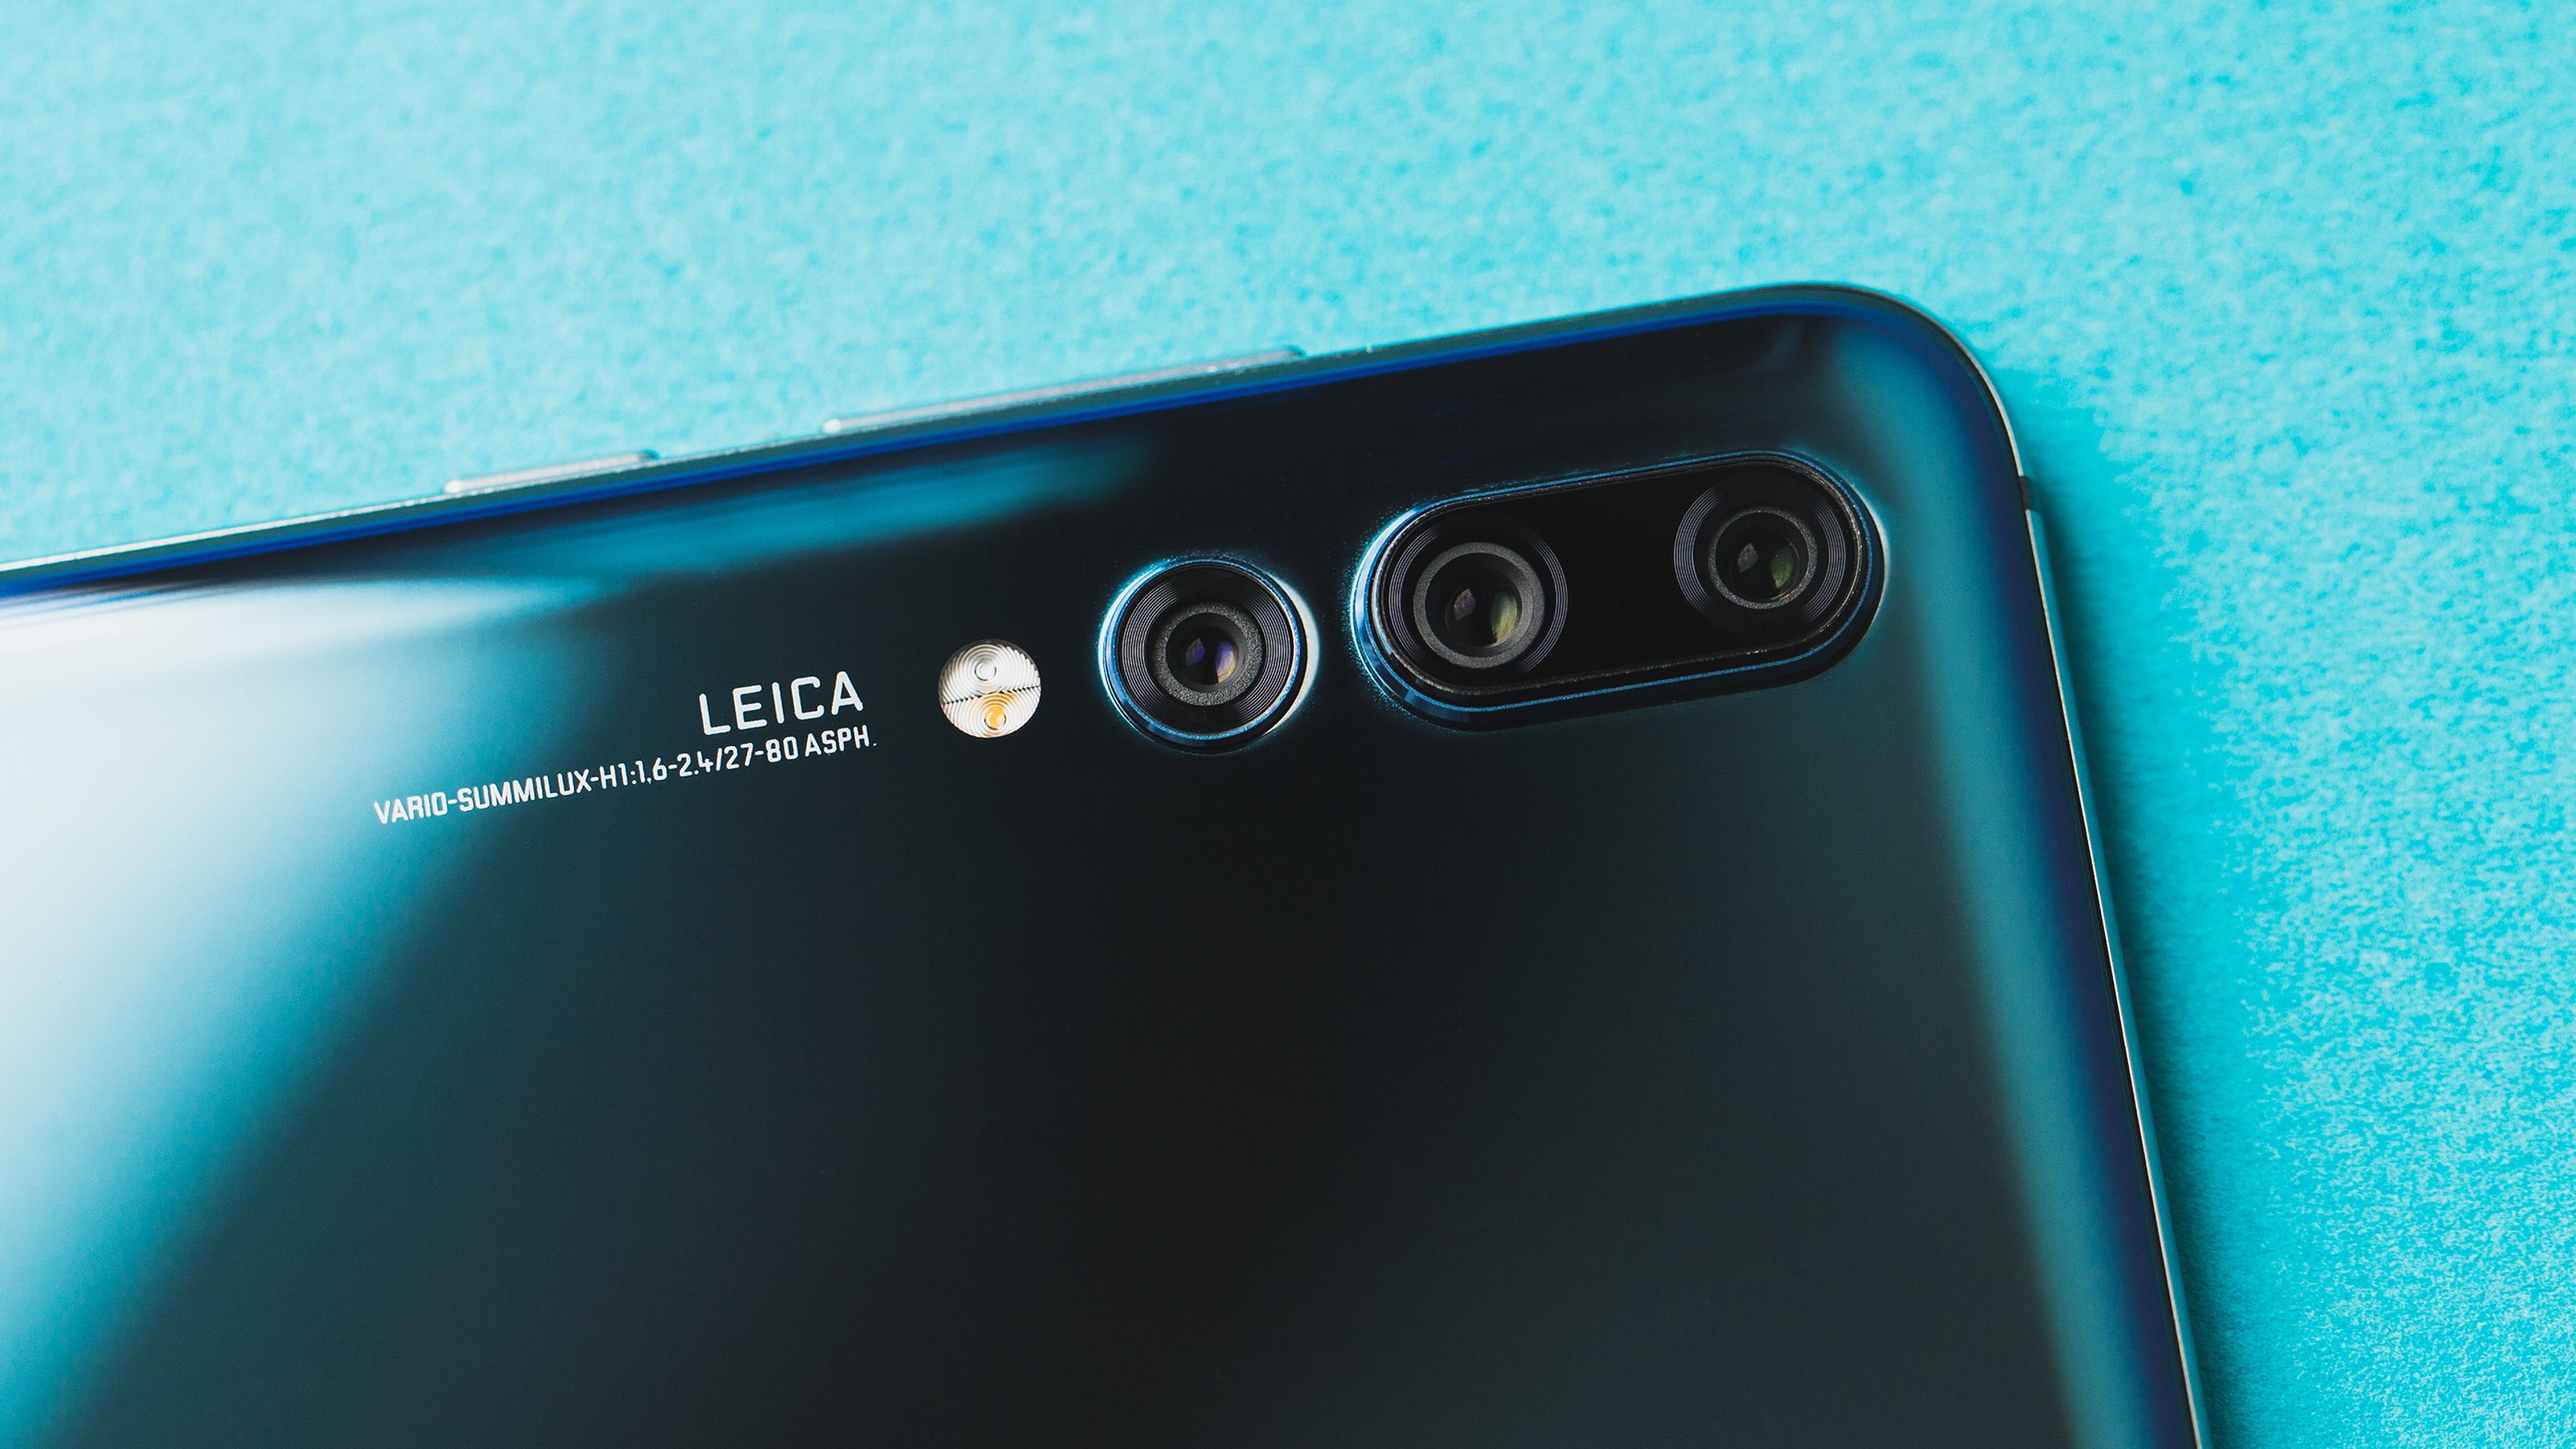 Хуавей камера на андроид. Huawei Leica p20. Хуавей Leica 3 камеры. Huawei Leica p20 Pro. Huawei Leica Summarit h1 2.2/27 ASPH.